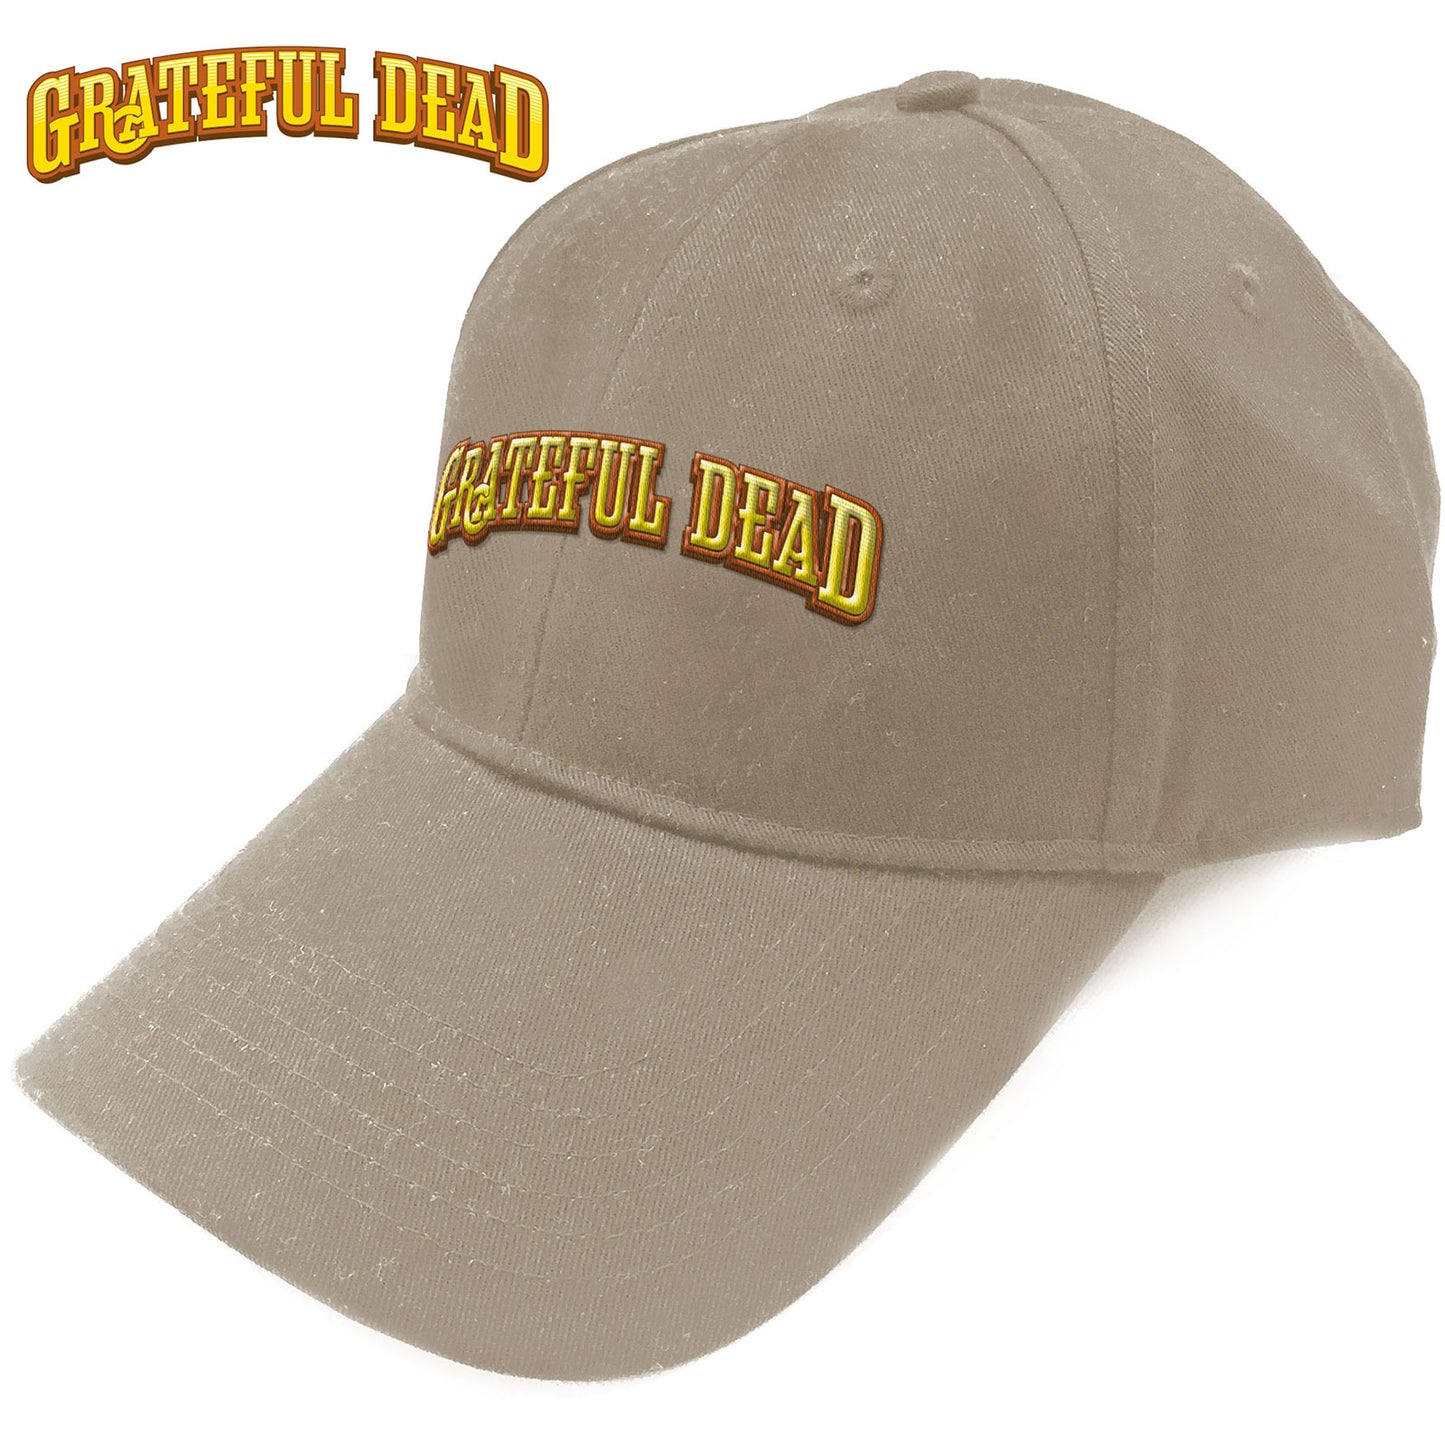 Grateful Dead Baseball Cap: Sunshine Daydream Logo